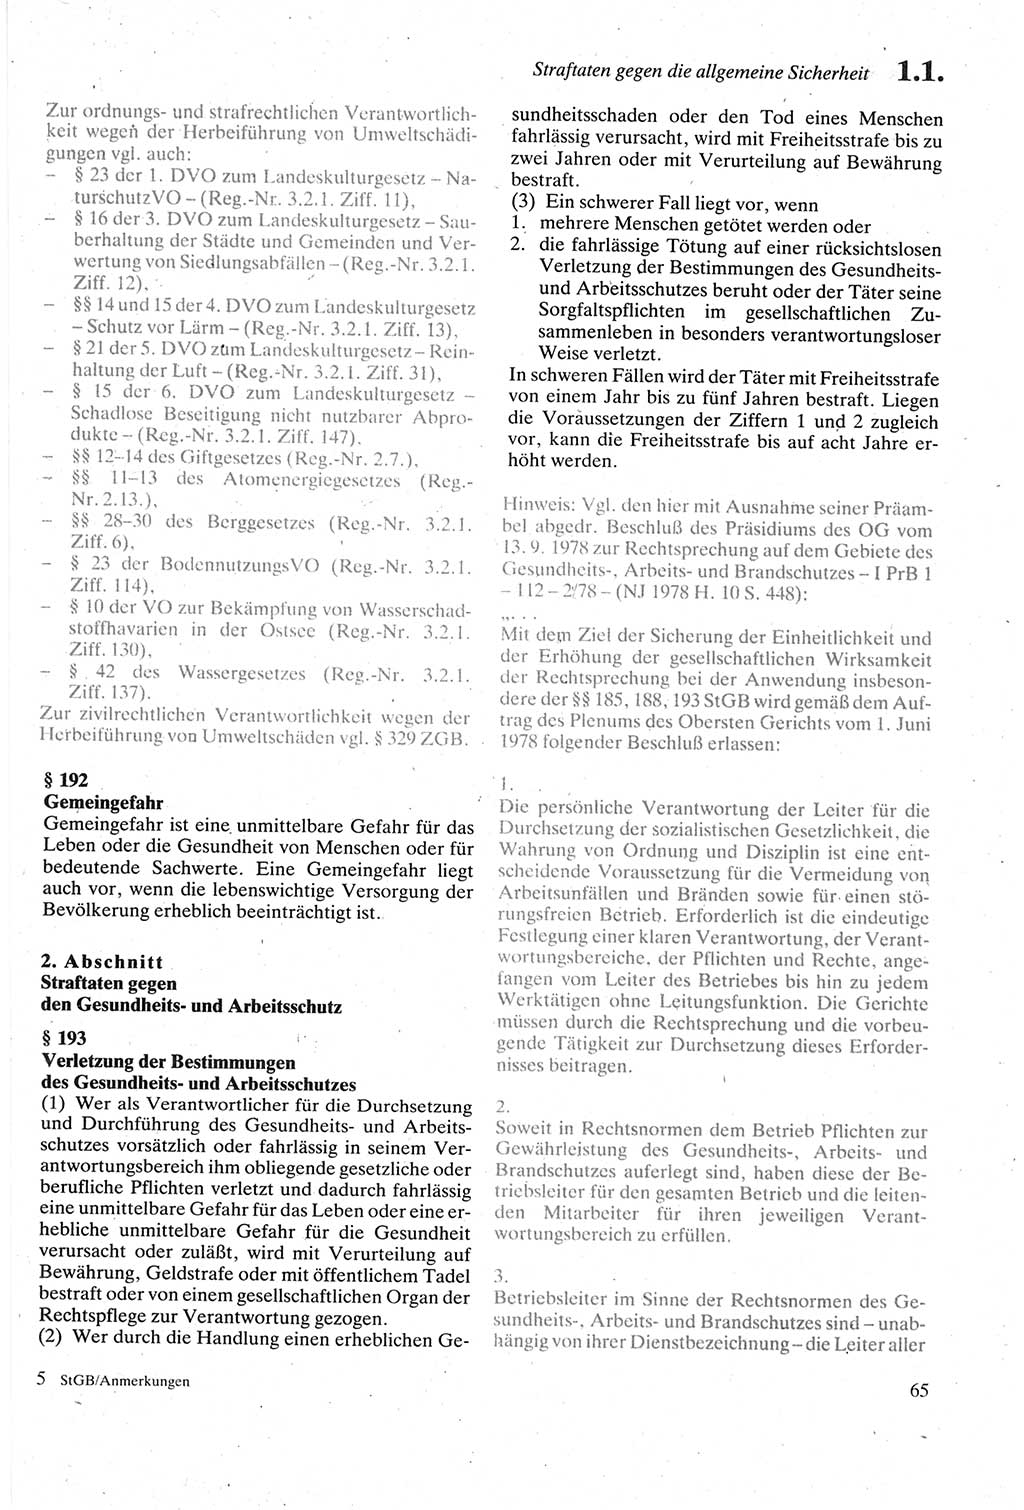 Strafgesetzbuch (StGB) der Deutschen Demokratischen Republik (DDR) sowie angrenzende Gesetze und Bestimmungen 1979, Seite 65 (StGB DDR Ges. Best. 1979, S. 65)